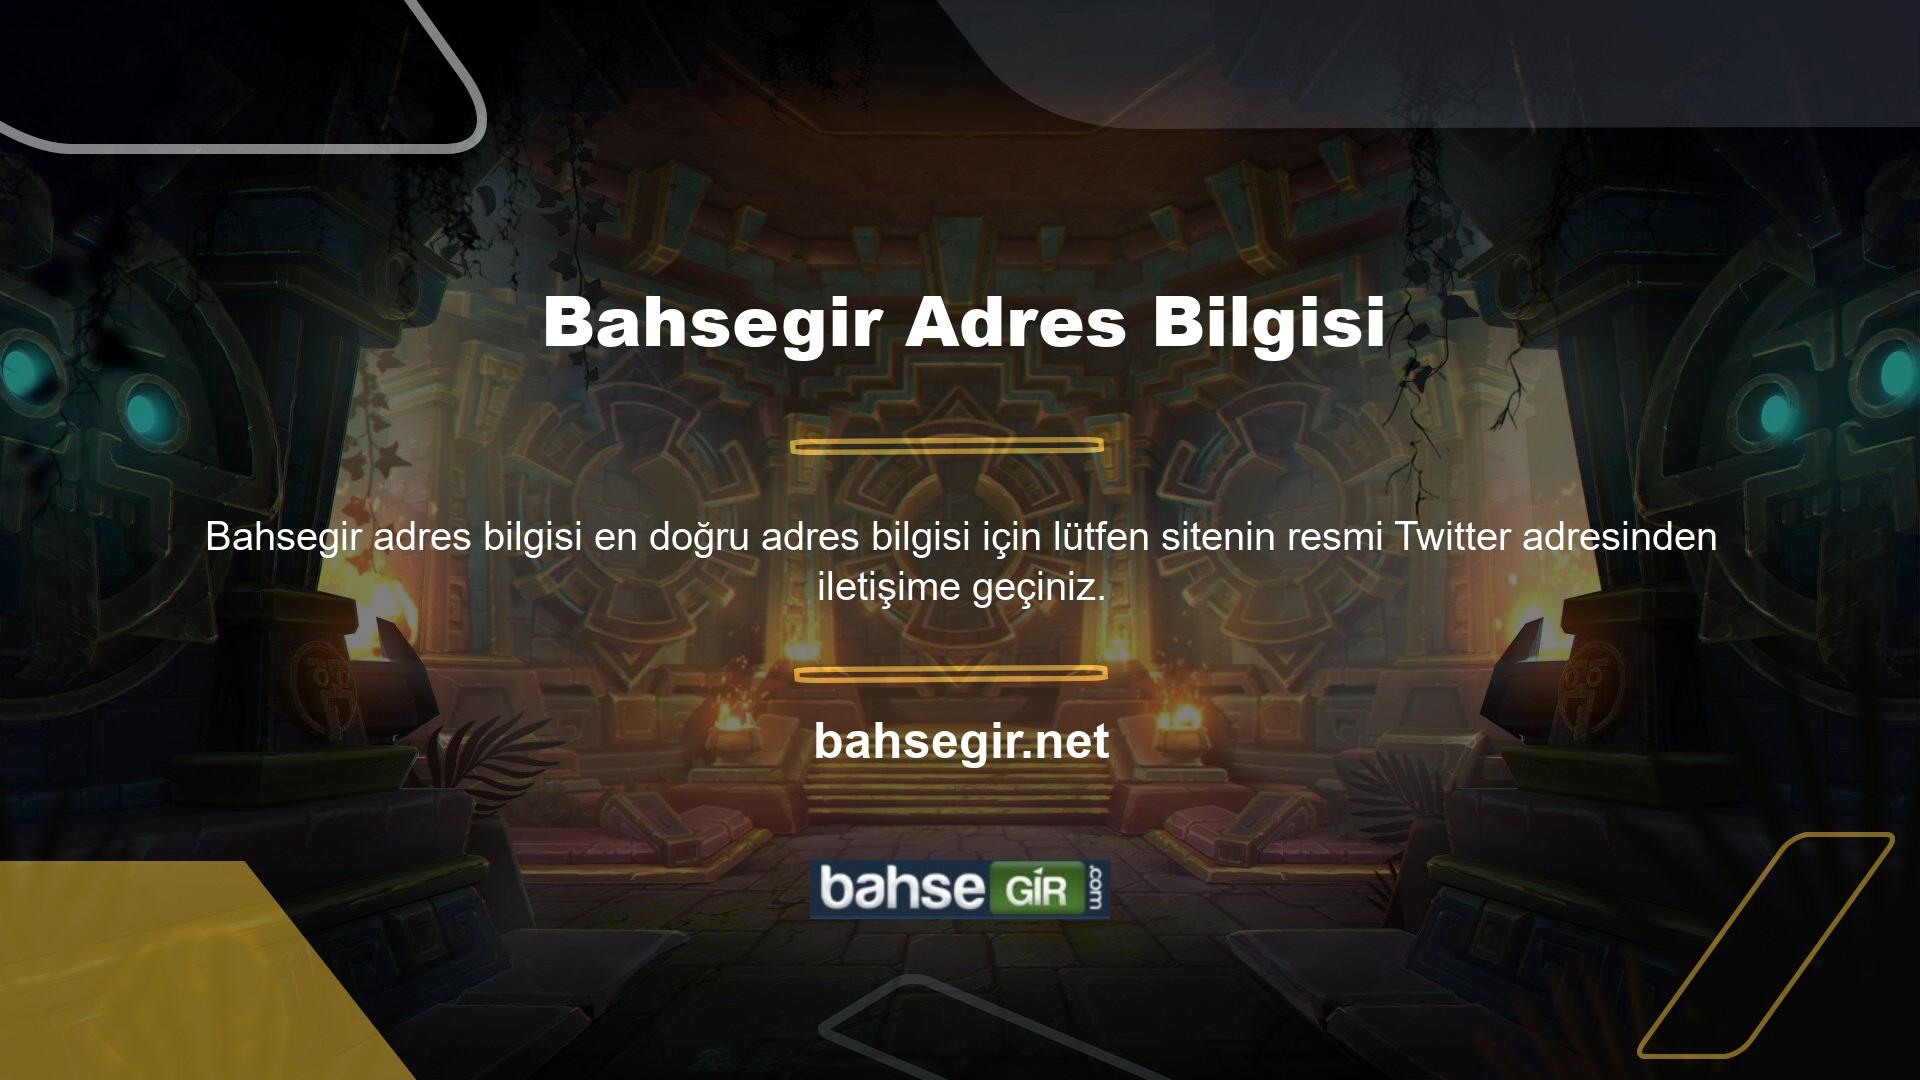 Twitter uygulamasında Bahsegir güncel kimlik bilgilerine ulaşmanın iki farklı yolu bulunmaktadır